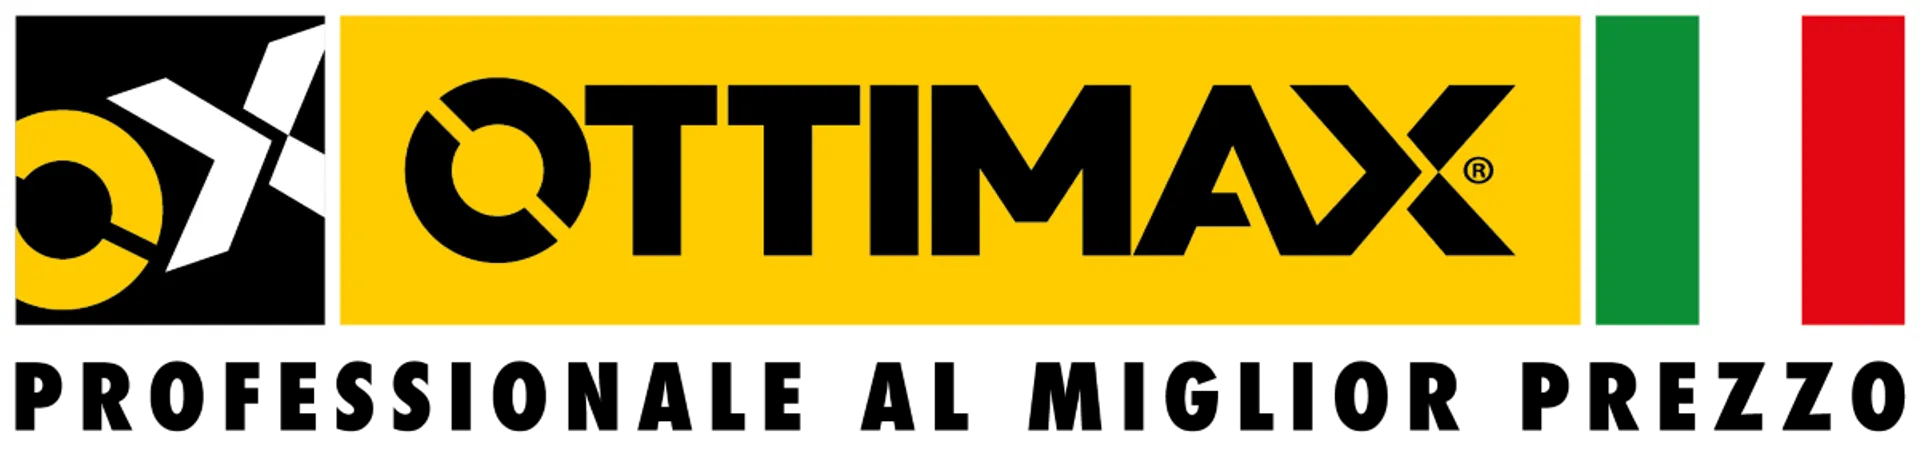 OTTIMAX logo del volantino attuale